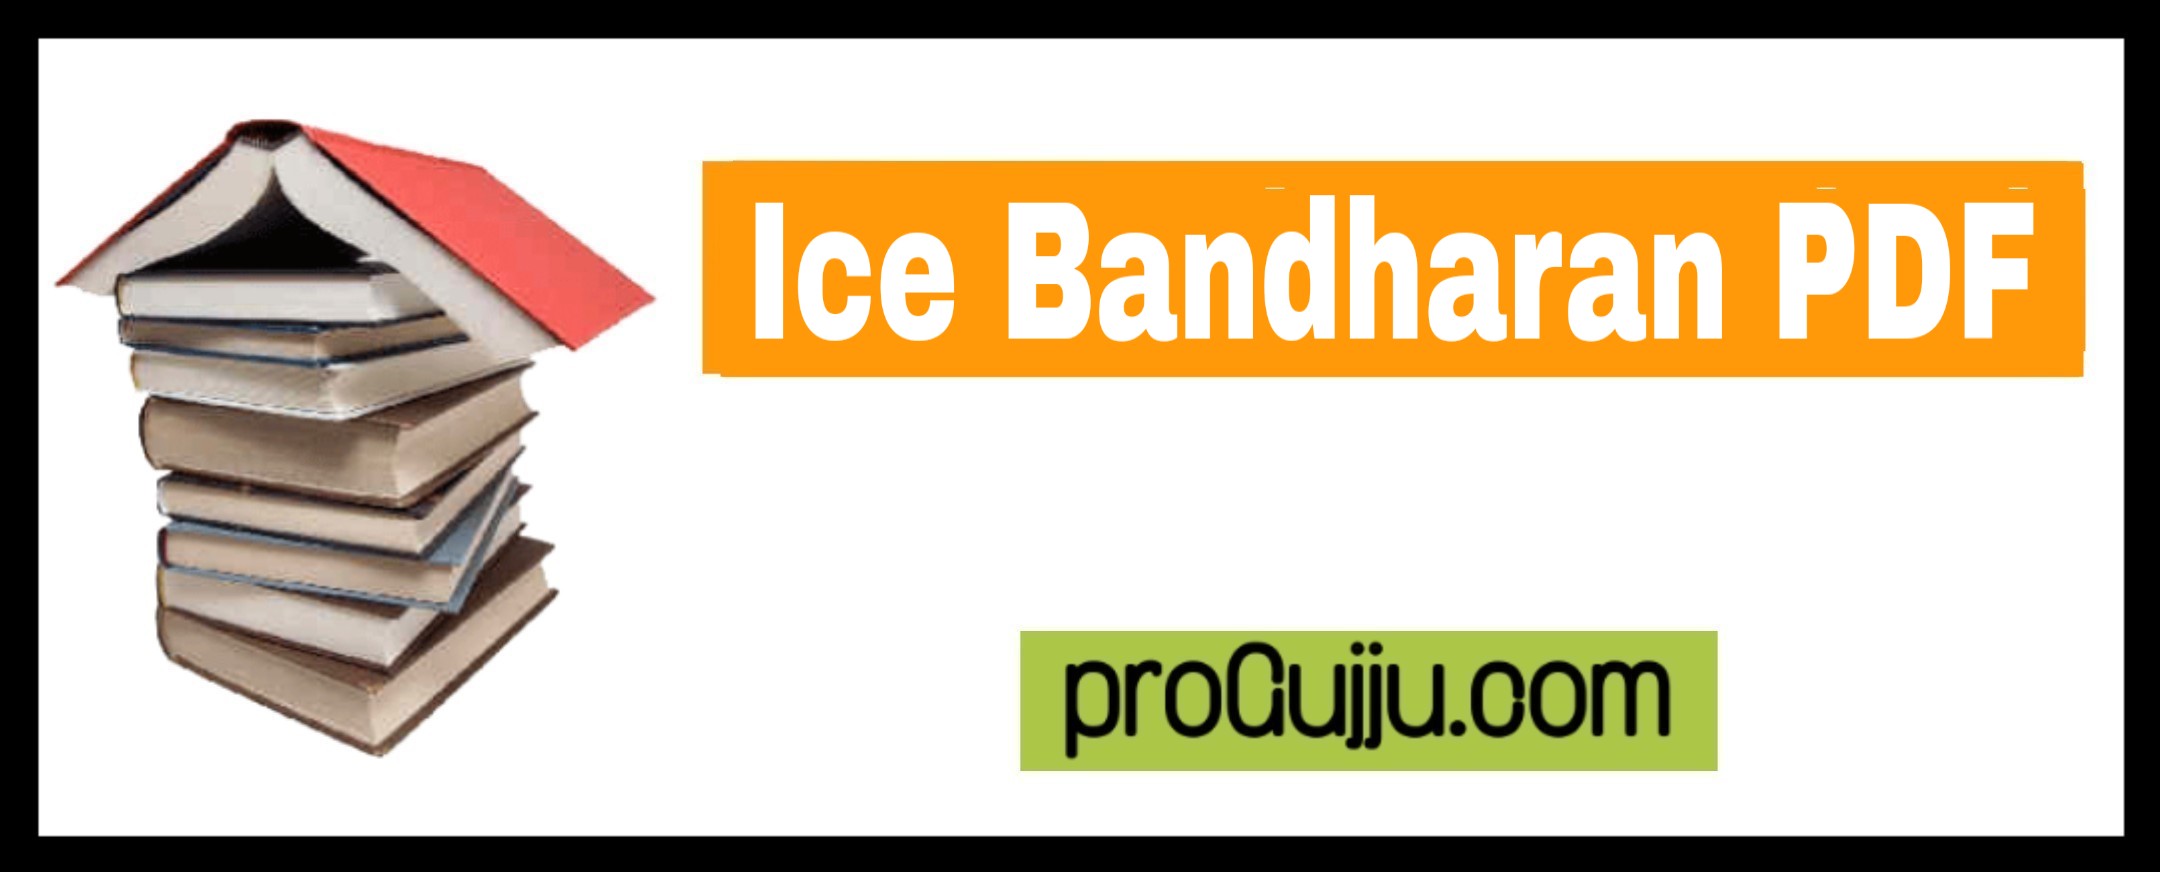 Ice Bandharan PDF